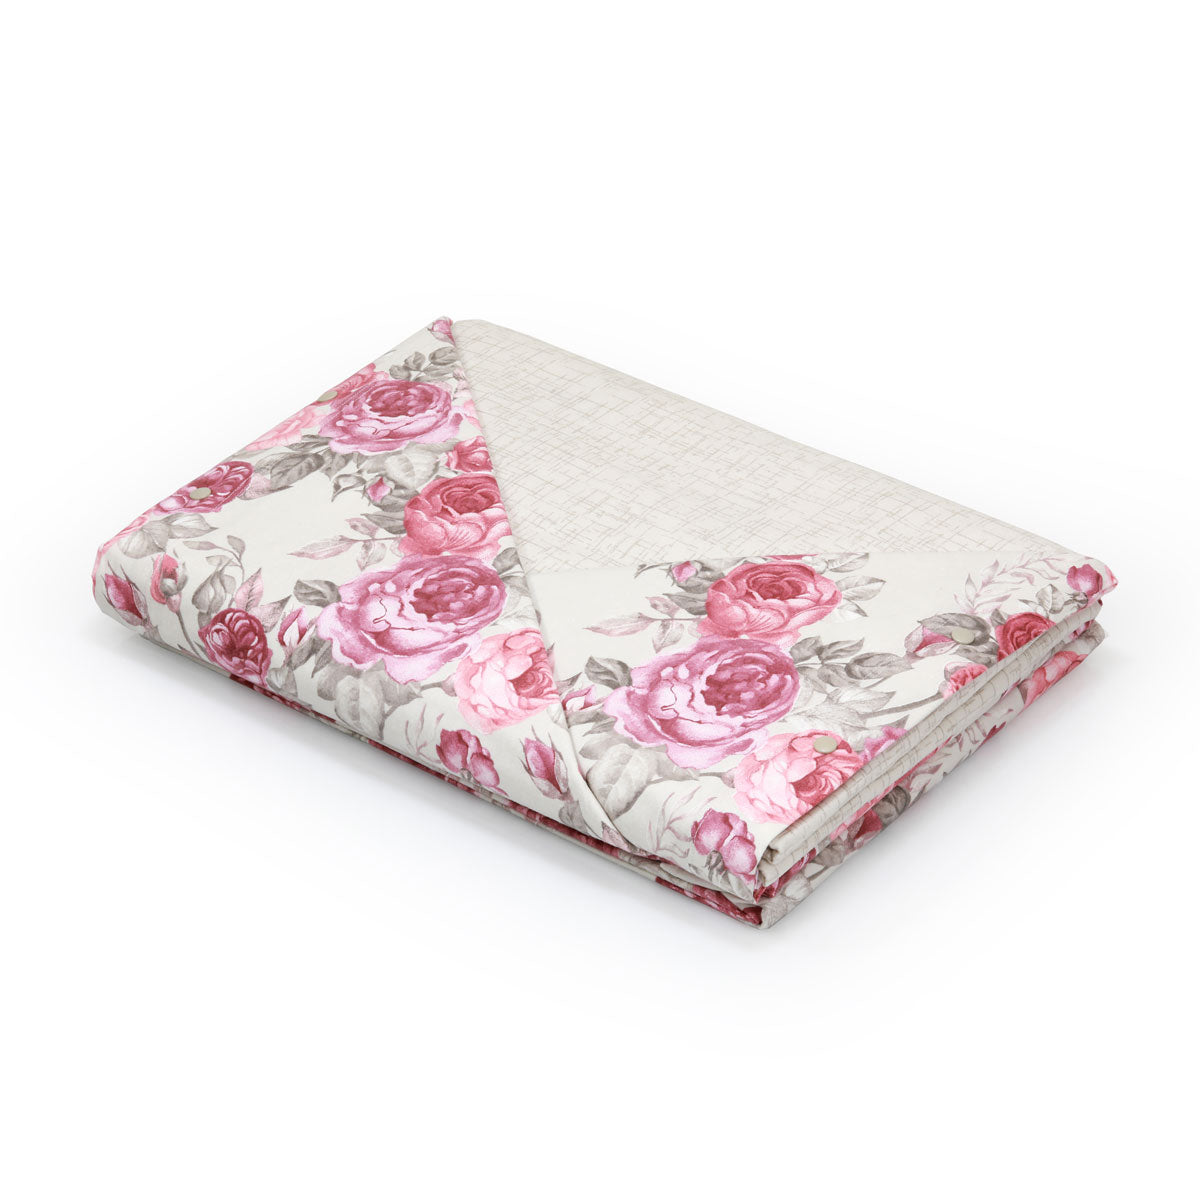 Completo letto in flanella di puro cotone matrimoniale con misure grandi a fantasia floreale rosa